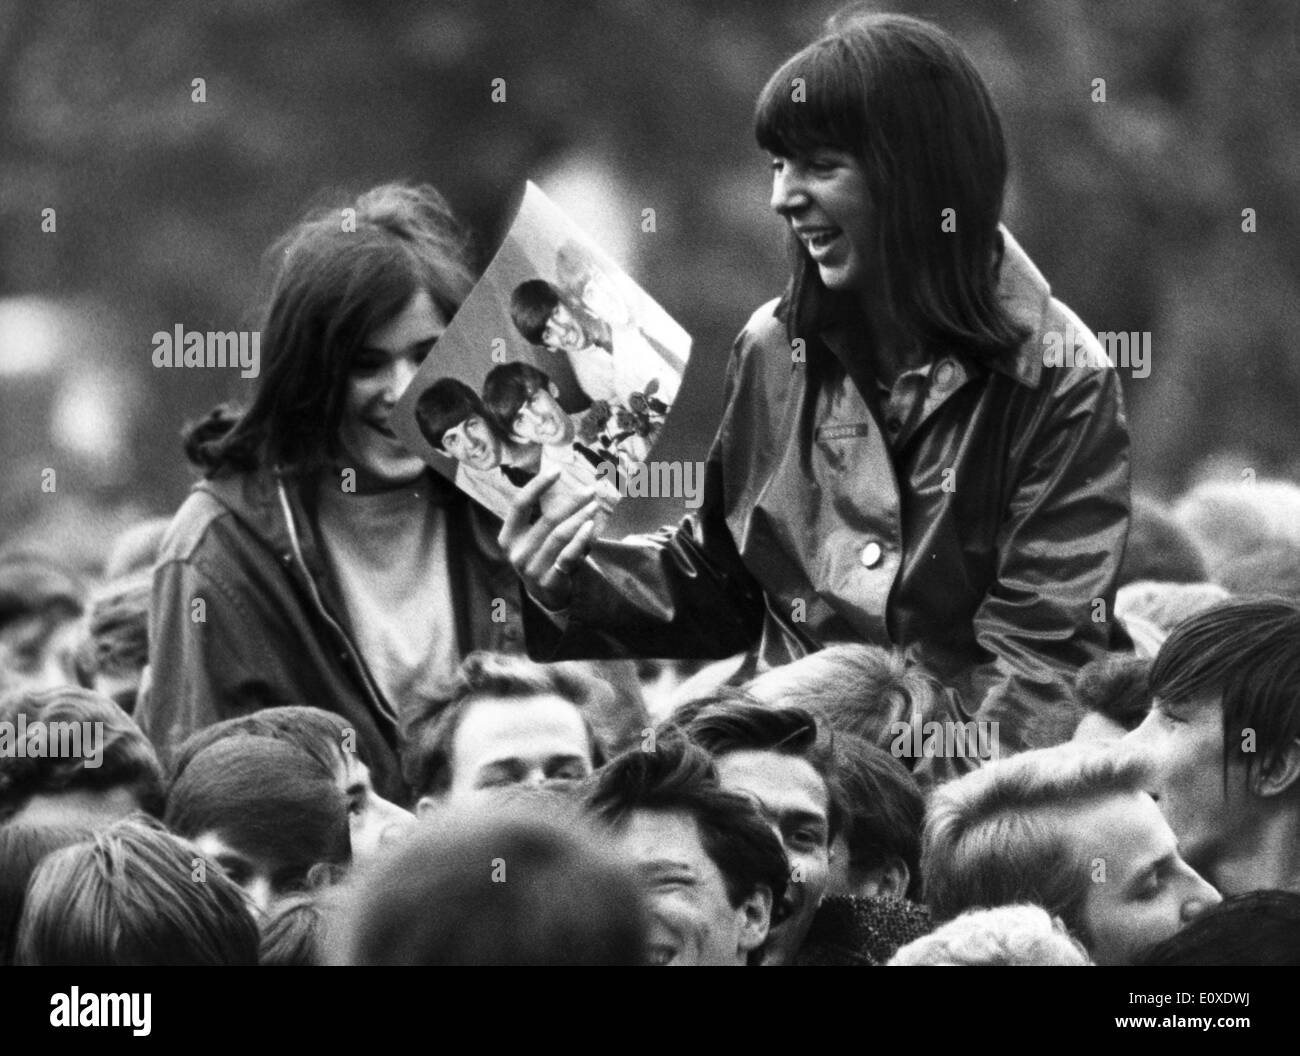 Jungen Beatles Fans jubeln beim Konzert Stockfoto